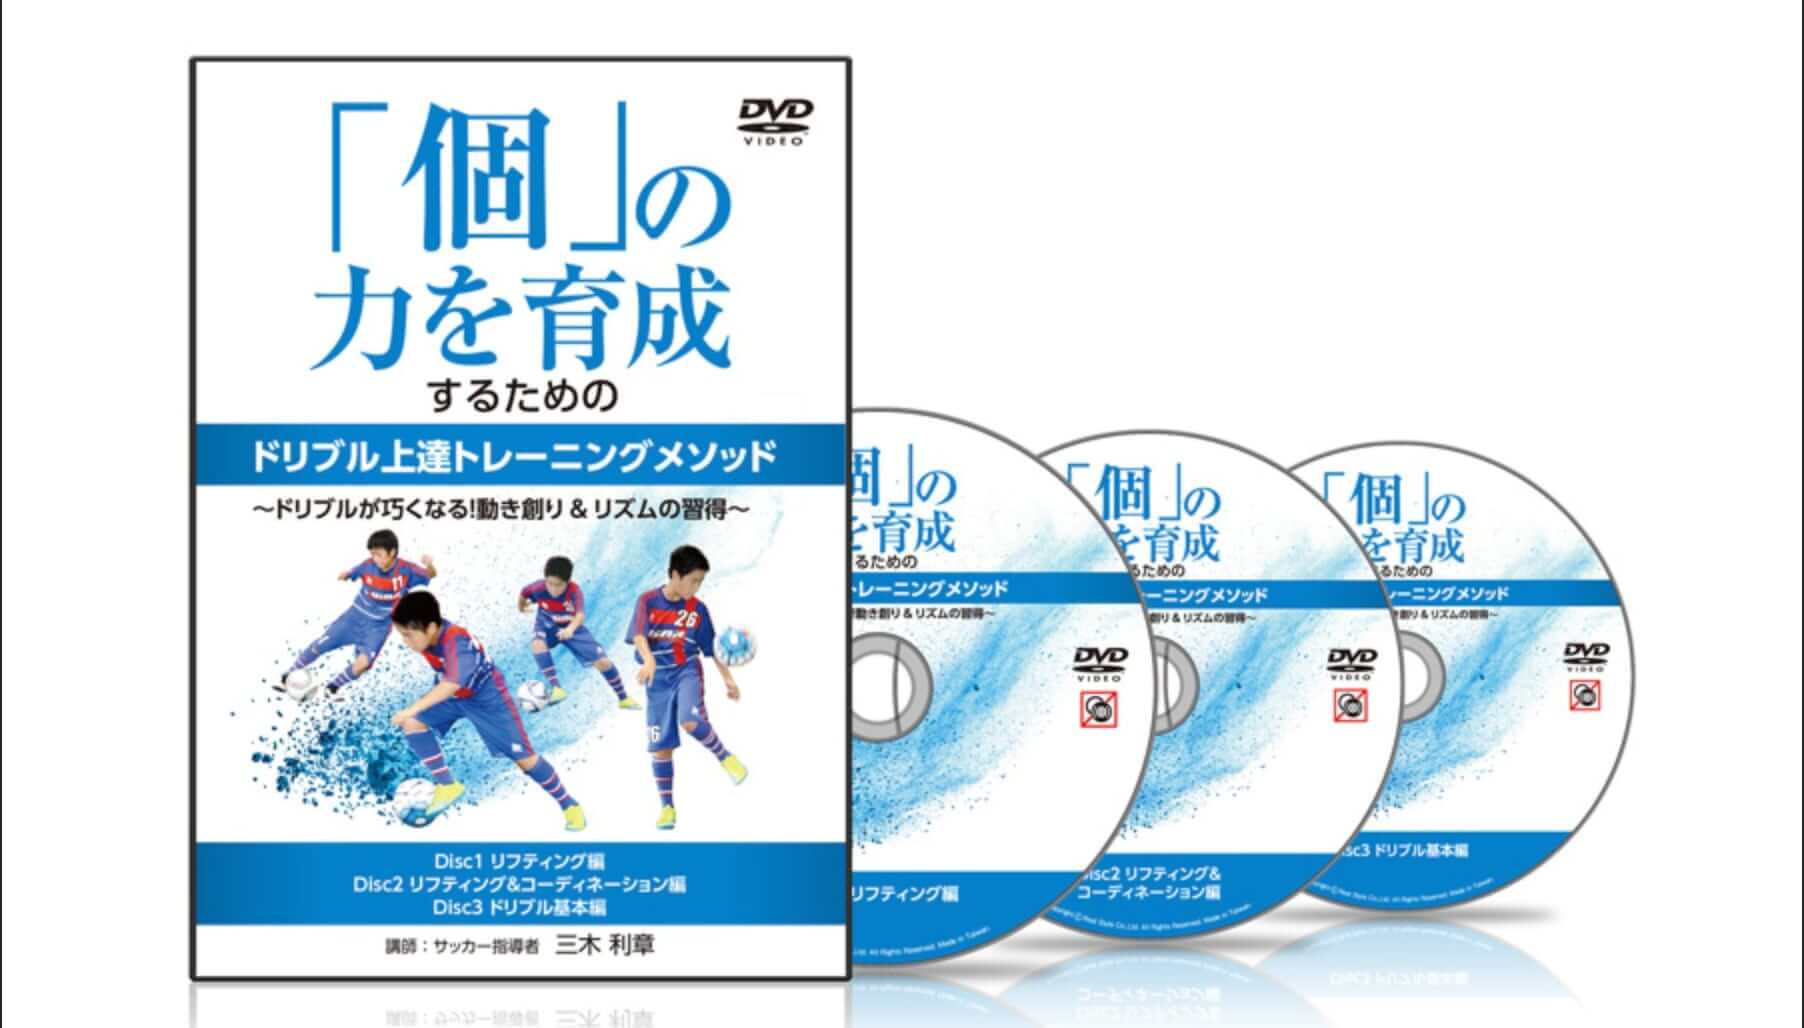 おすすめのサッカー教材DVD10本を紹介!!トレーニングで技術向上?!